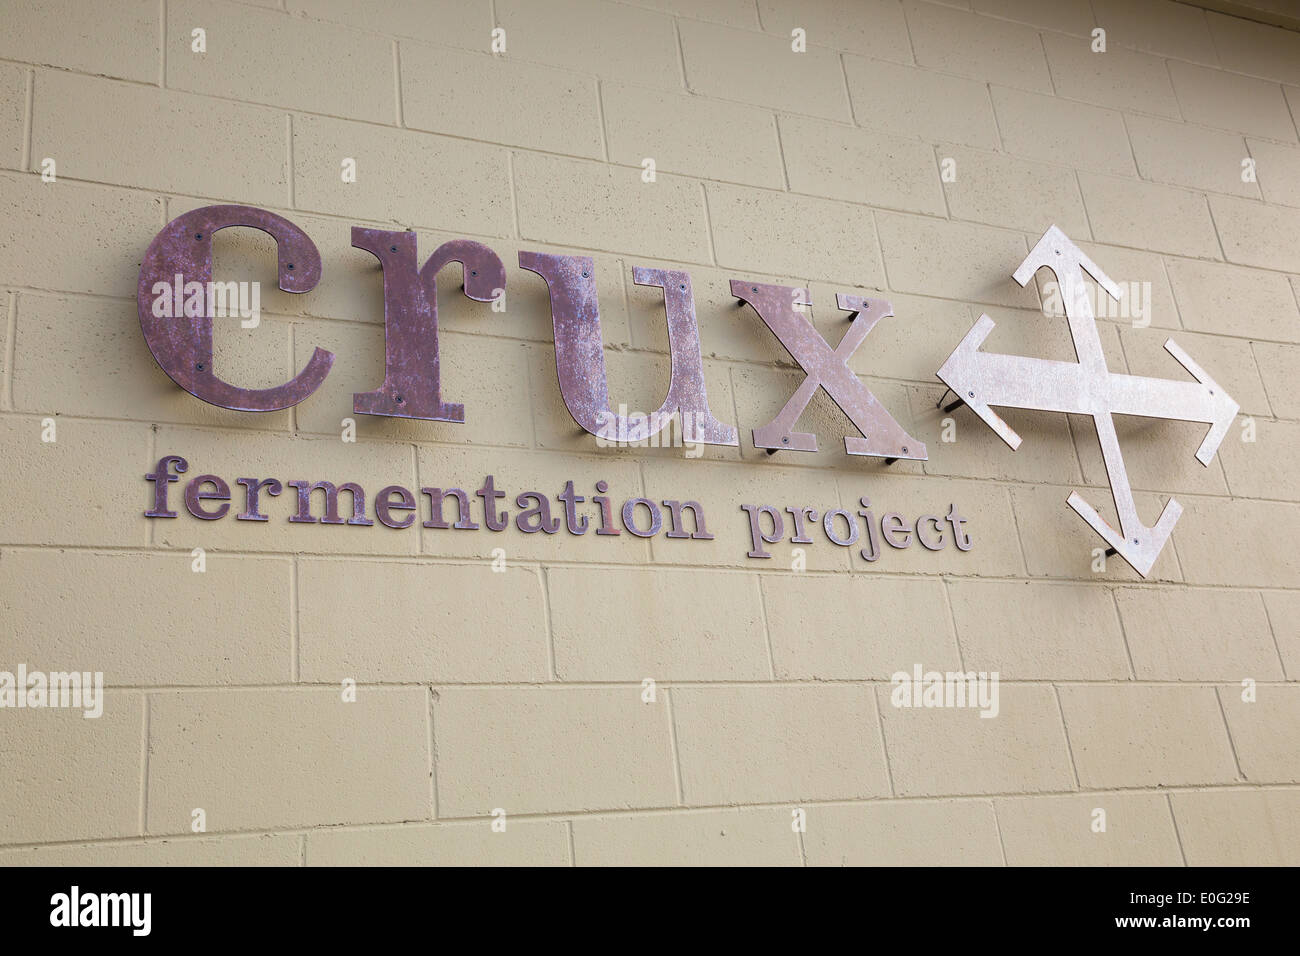 Piegare o, Stati Uniti d'America - 12 gennaio 2014: crux fermentazione segno del progetto al nocciolo birreria e taphouse in curva, Oregon. Foto Stock